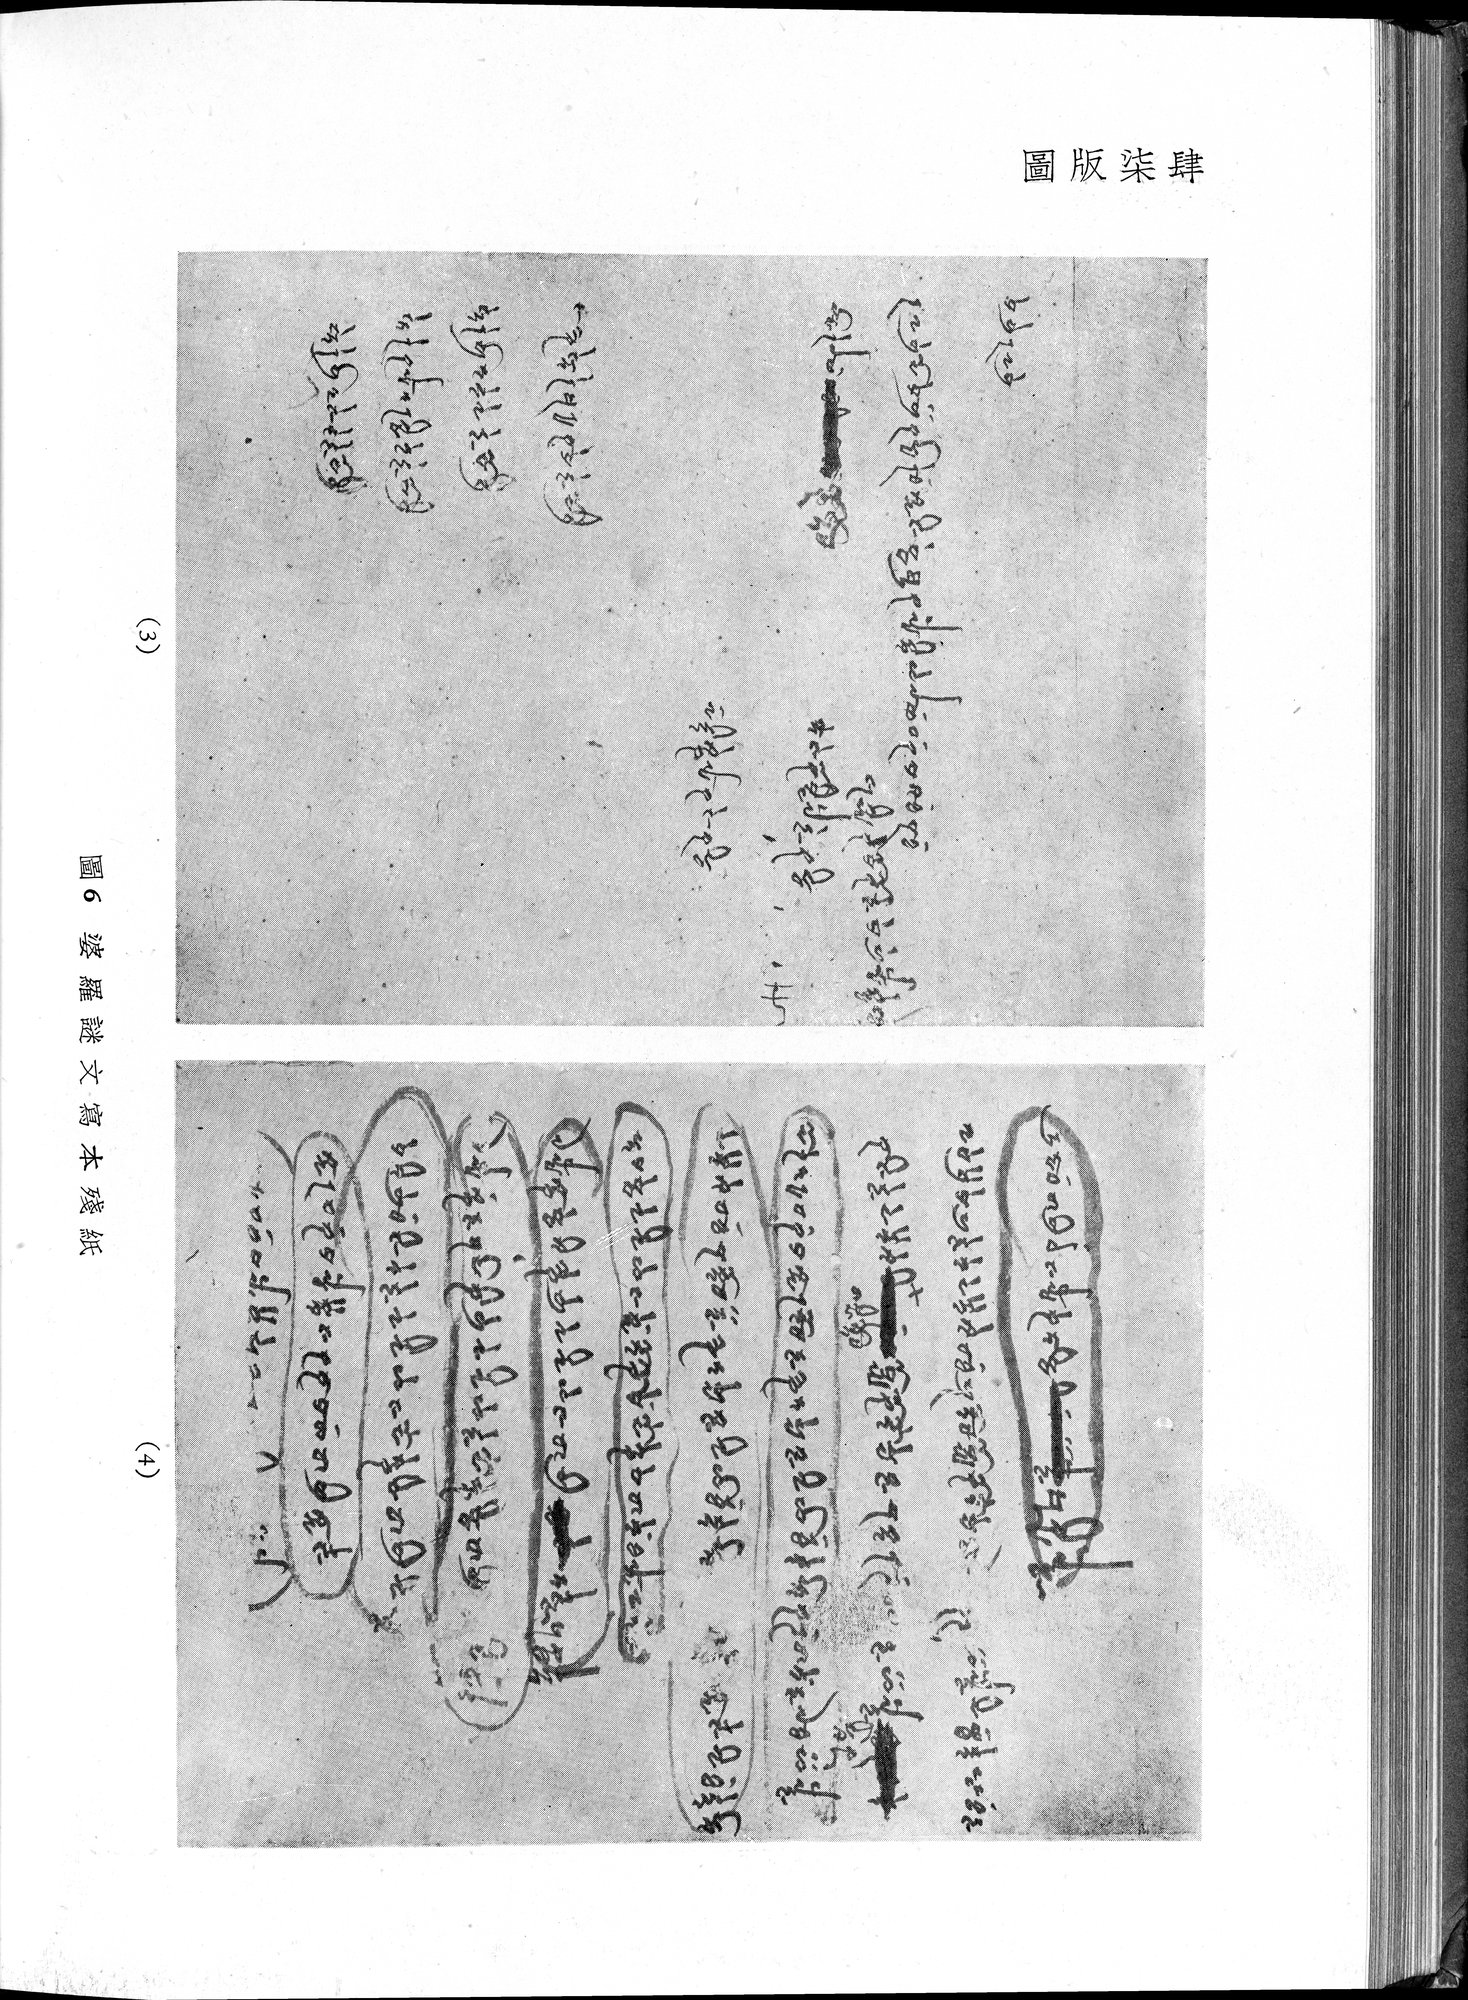 塔里木盆地考古記 : vol.1 / Page 308 (Grayscale High Resolution Image)